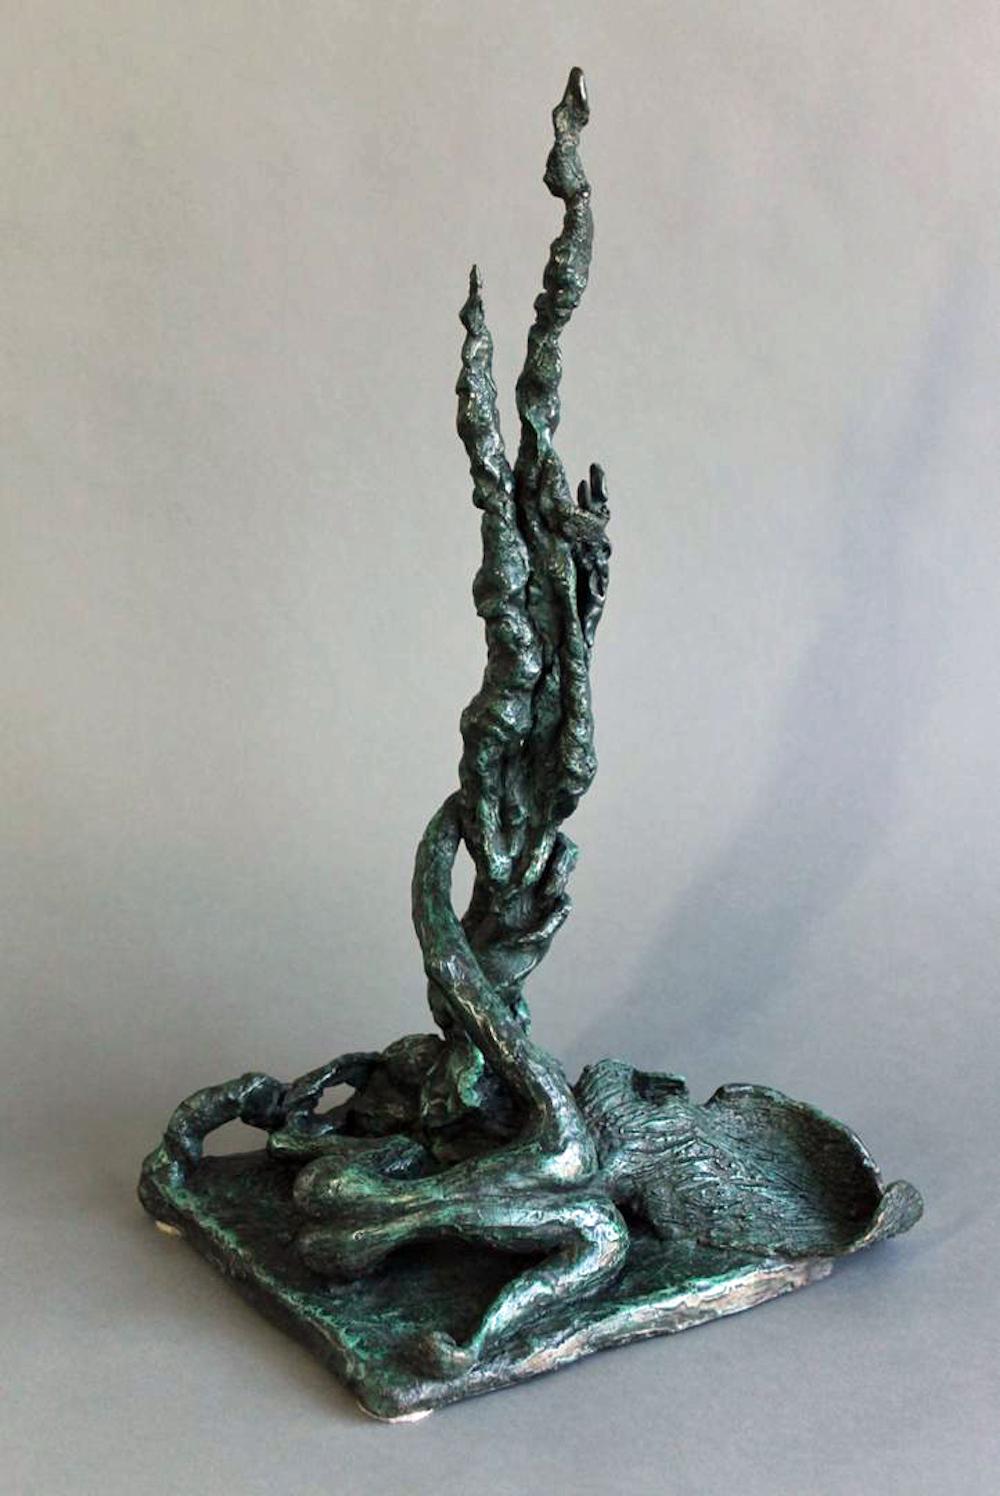 Organische, abstrakte Bronzeskulptur von Yulla Lipchitz, die eine Frau darstellt, die sich mit einem Baum hinlegt. 

Über diese Künstlerin: Yulla Lipchitz, geborene Halberstadt, wurde am 21. April 1911 in Berlin, Deutschland, geboren. Sie wuchs in